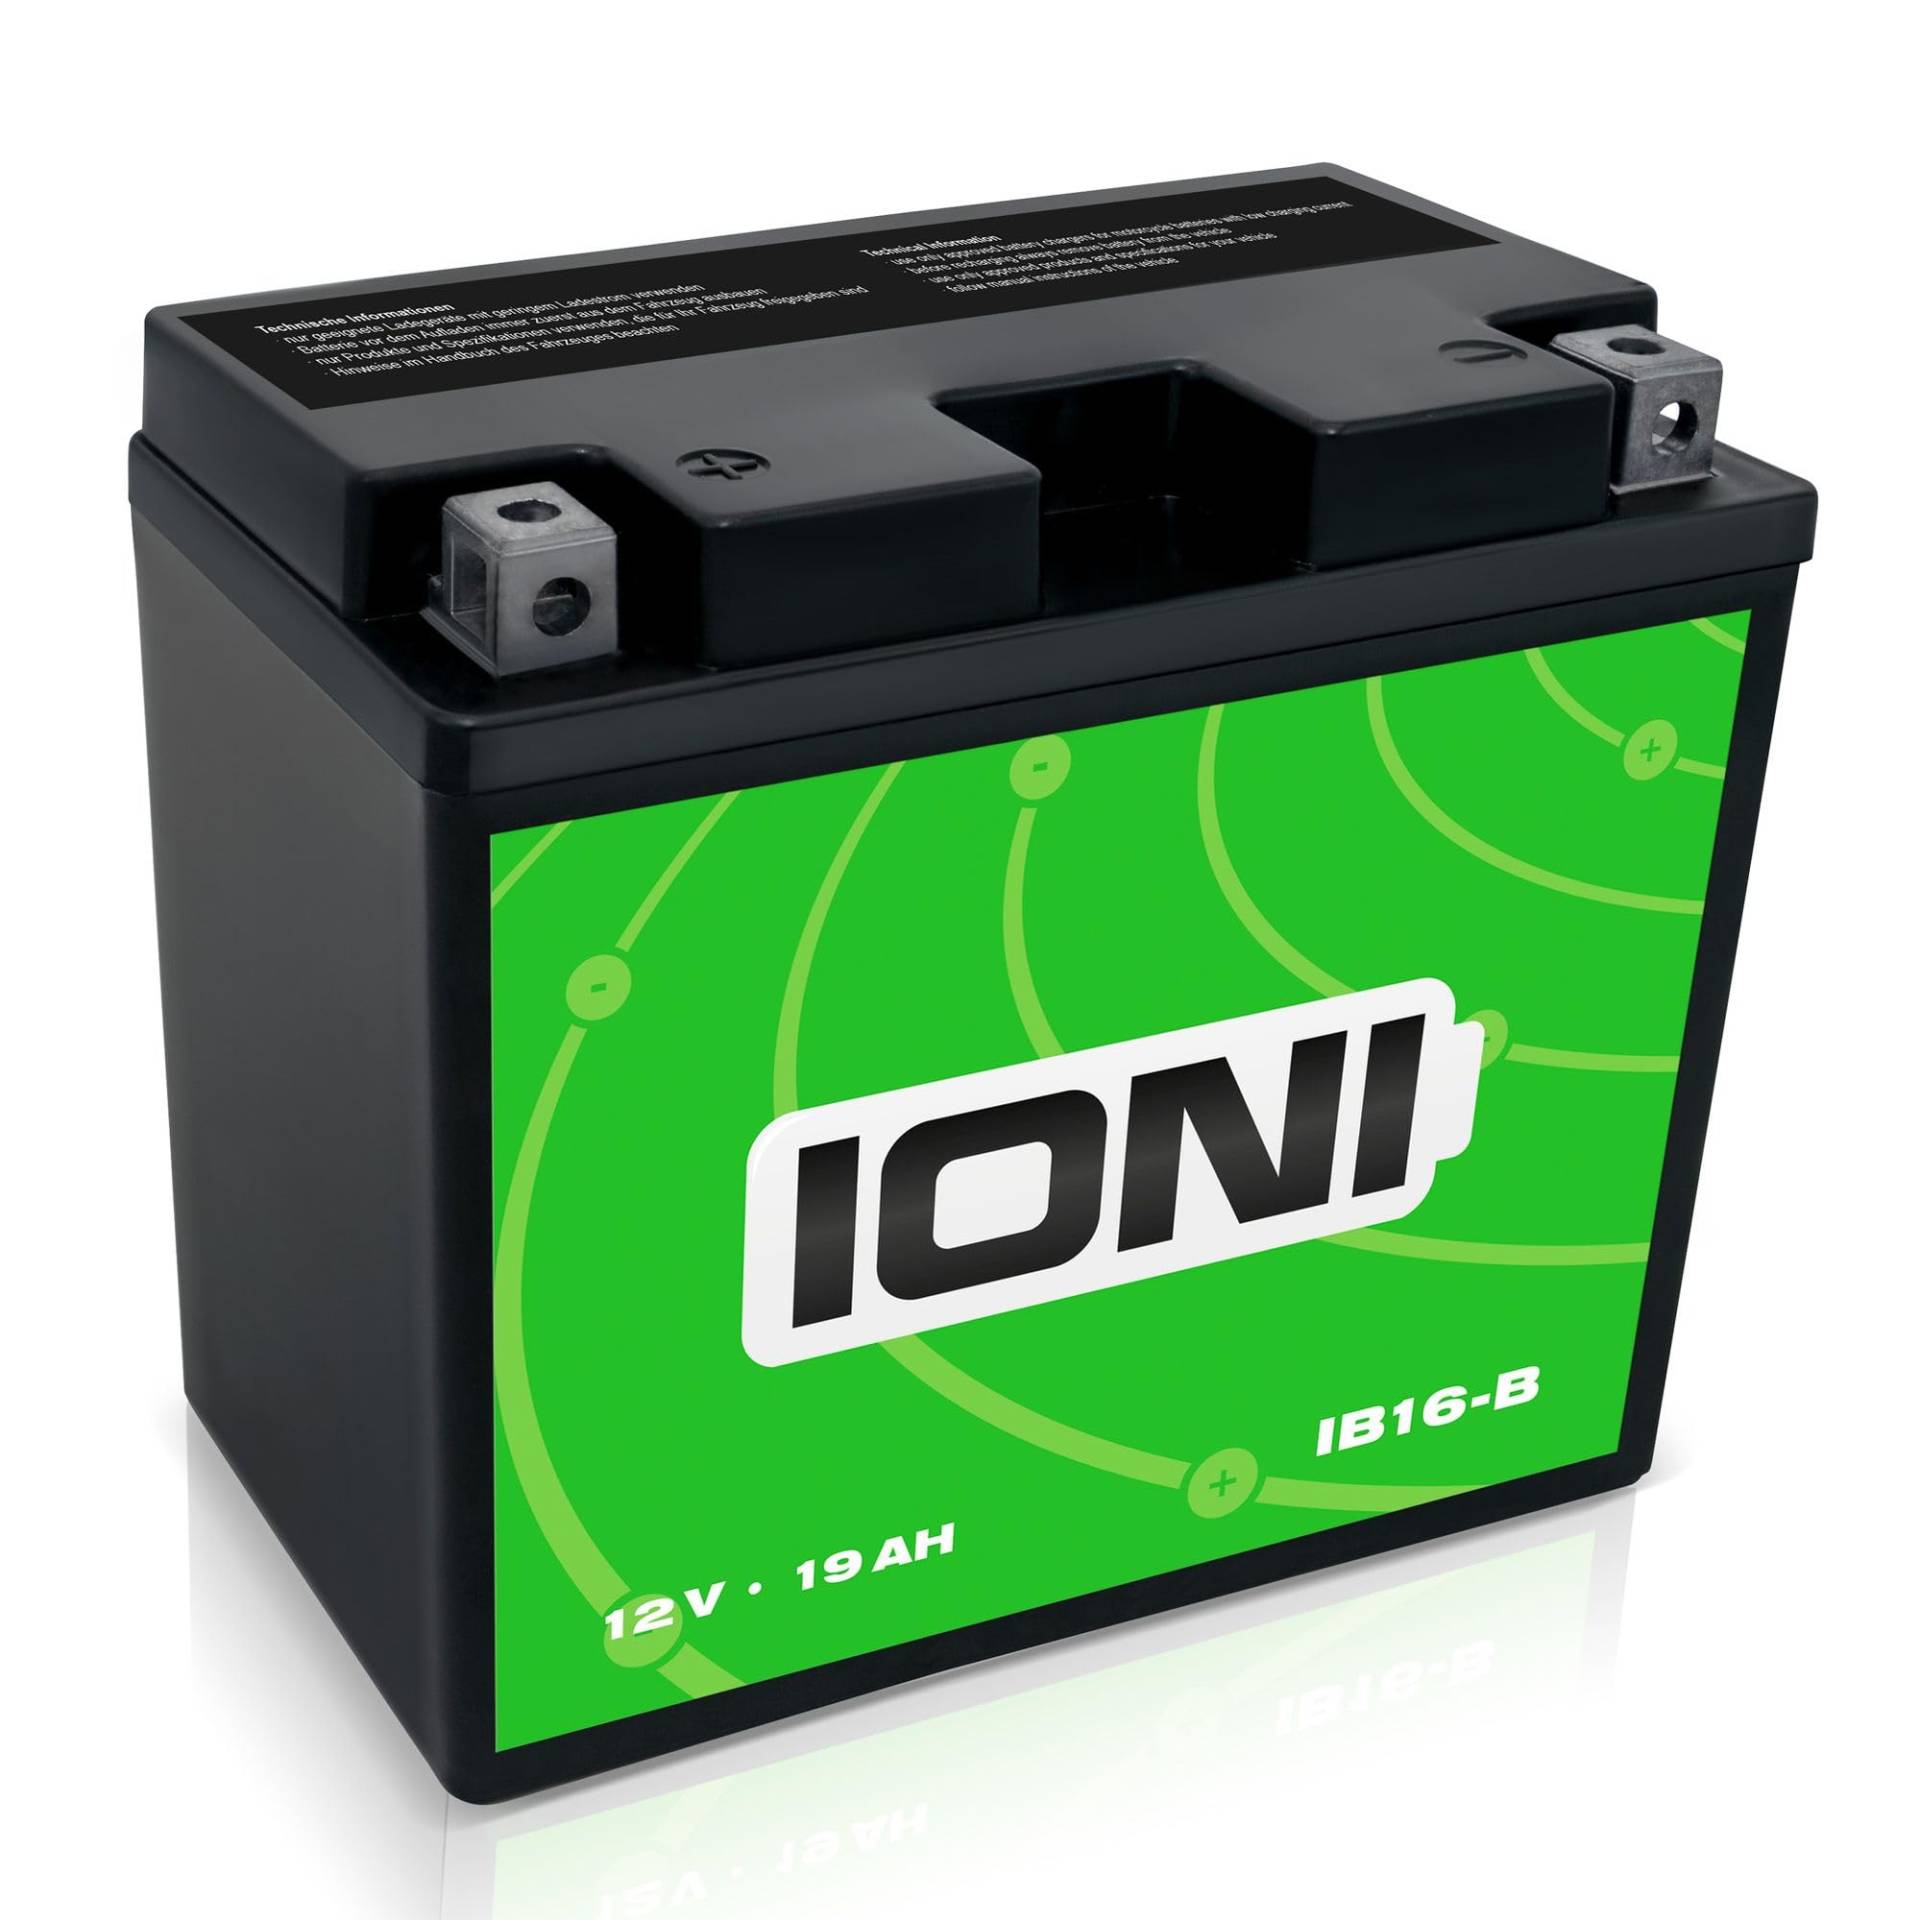 IONI IB16-B 12V 19Ah AGM Batterie kompatibel mit YB16-B versiegelt/wartungsfrei Motorradbatterie, 19Ah - kompatibel mit YB16-B von IONI